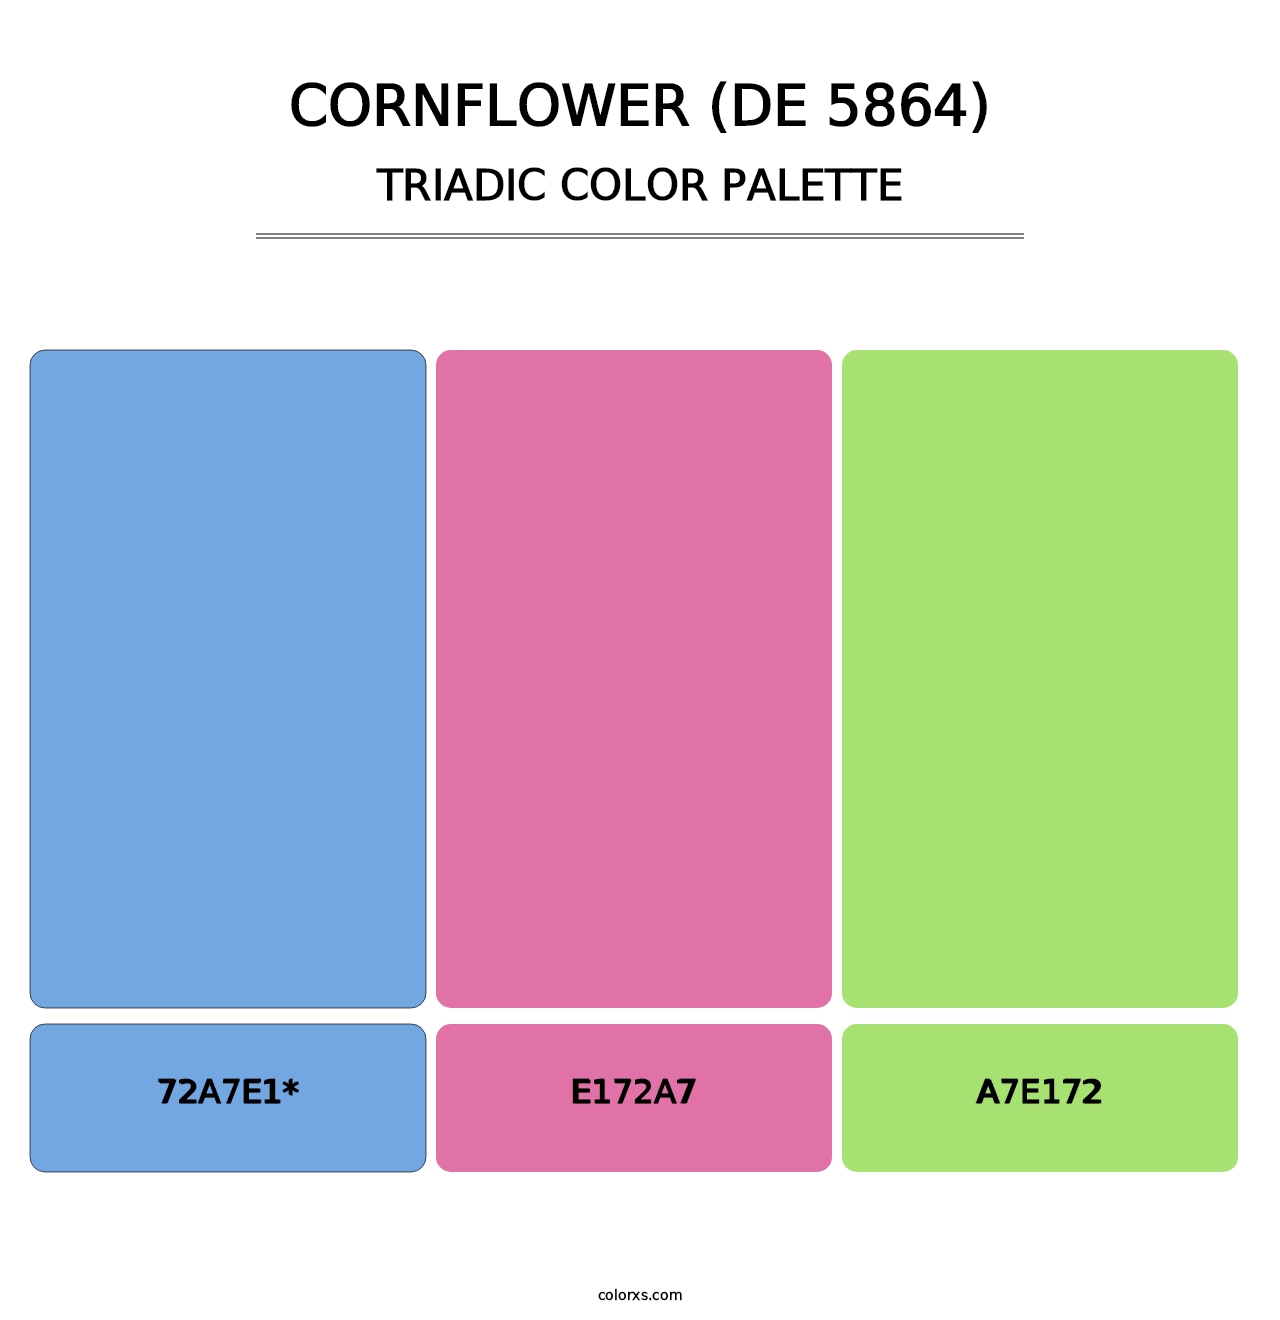 Cornflower (DE 5864) - Triadic Color Palette